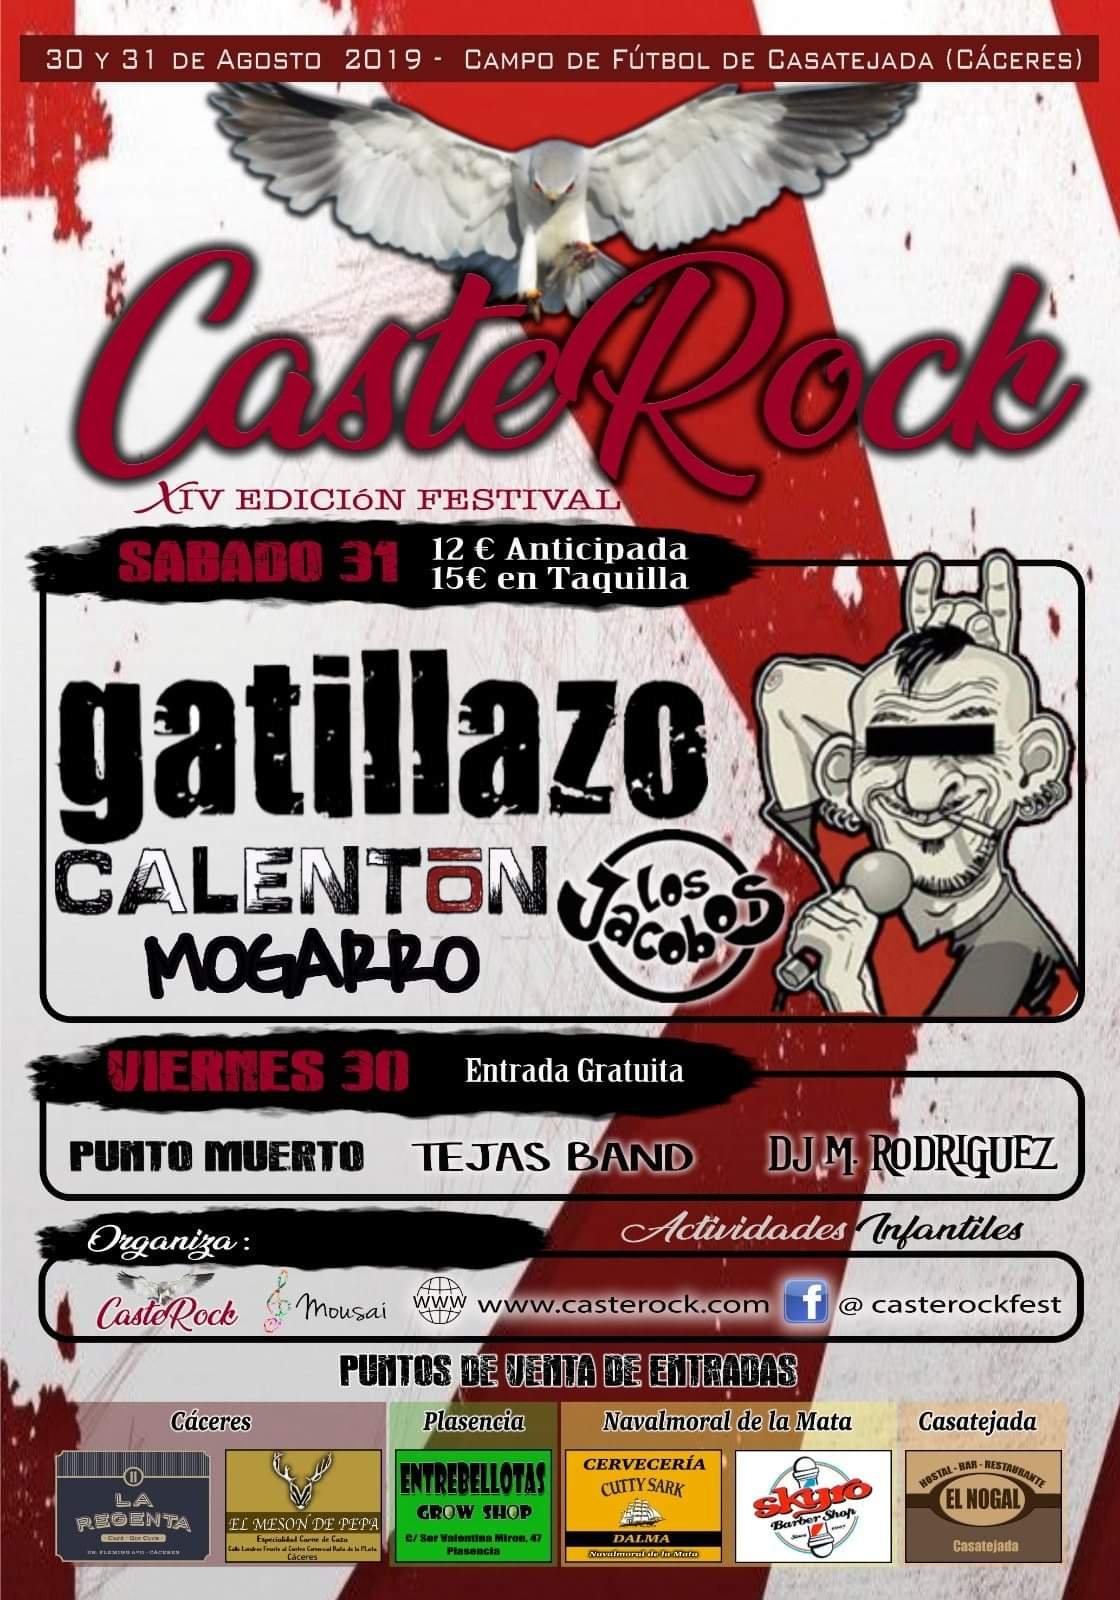 CasteRock 2019 - Casatejada (Cáceres)